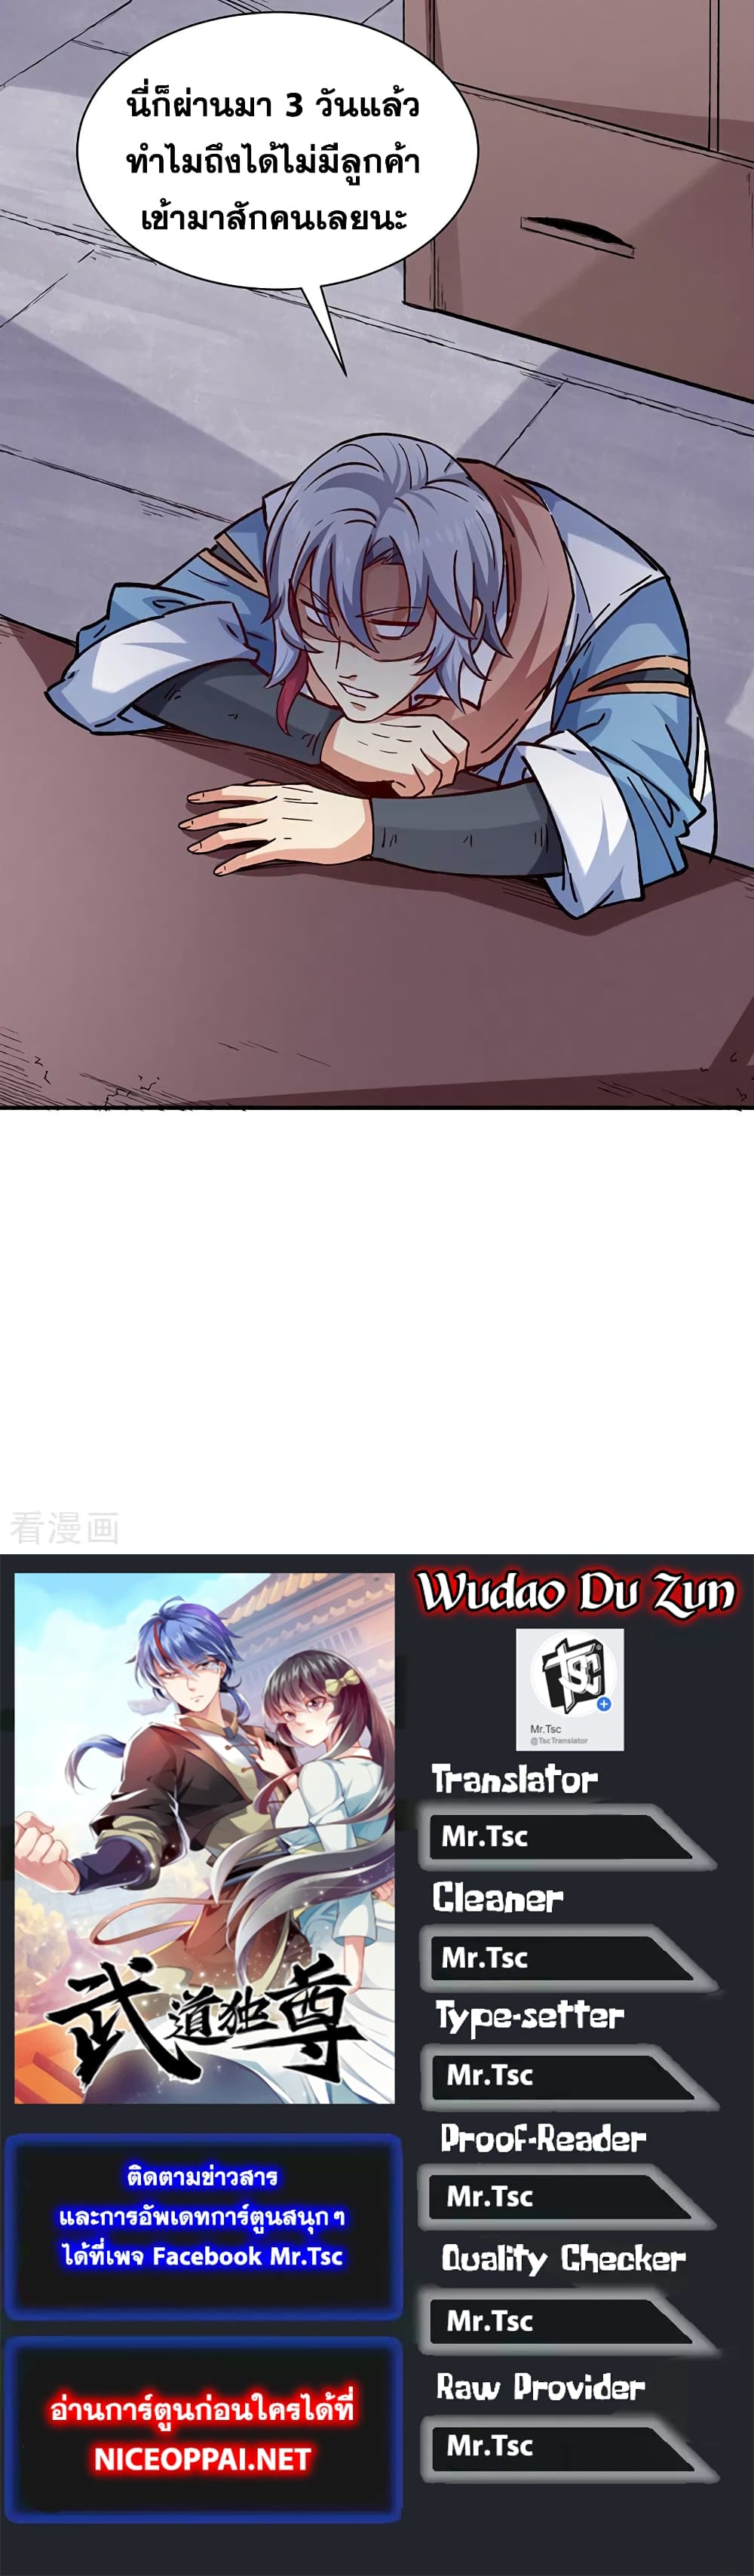 WuDao Du Zun 310-310